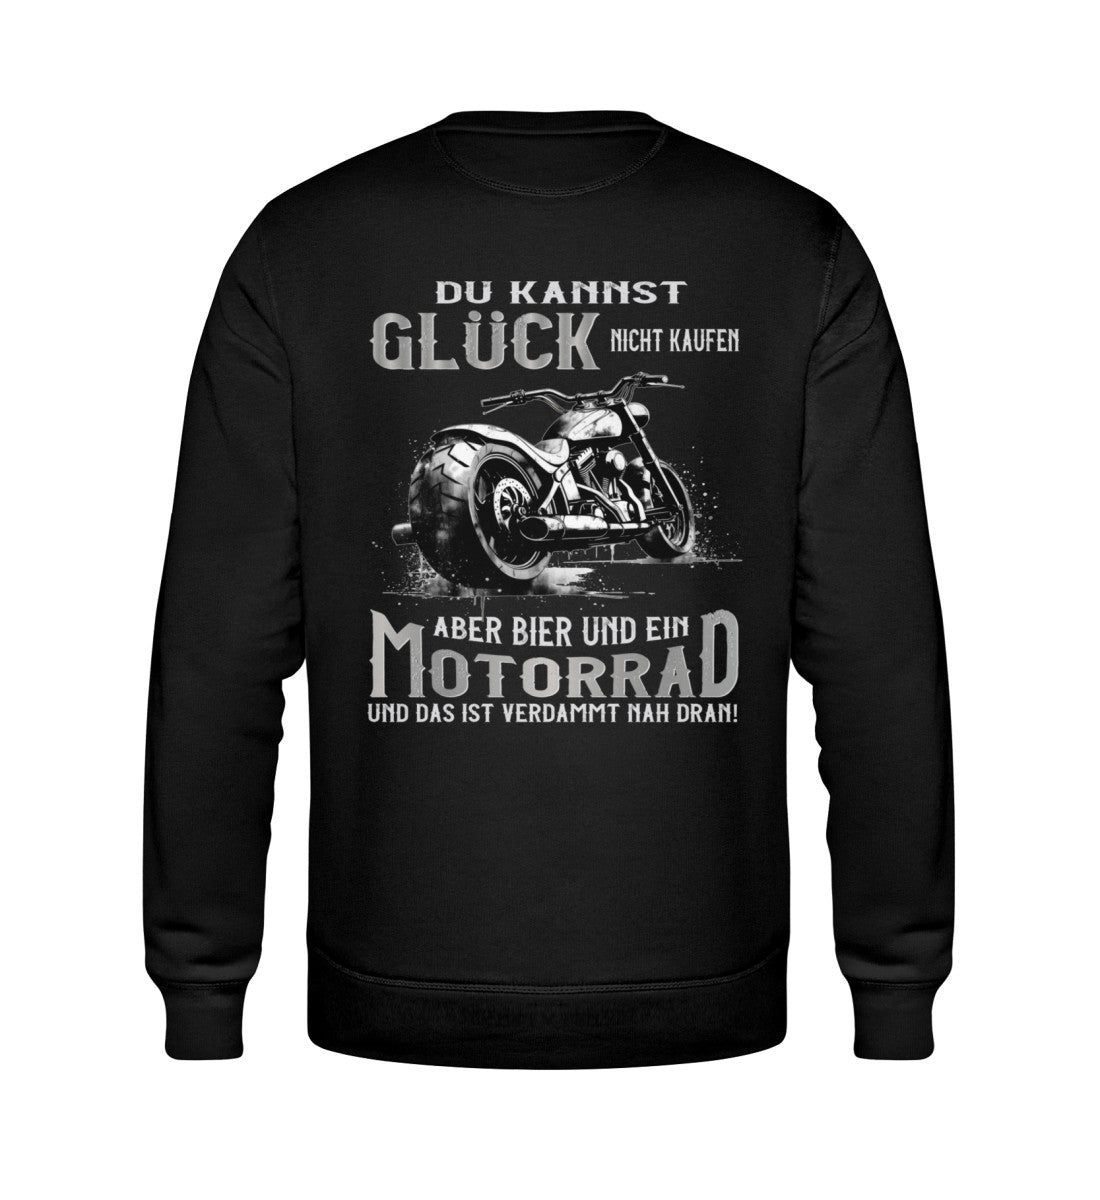 Ein Biker Sweatshirt für Motorradfahrer von Wingbikers mit dem Aufdruck, Du kannst Glück nicht kaufen, aber Bier und ein Motorrad und das ist verdammt nah dran! - mit Back Print, in schwarz.